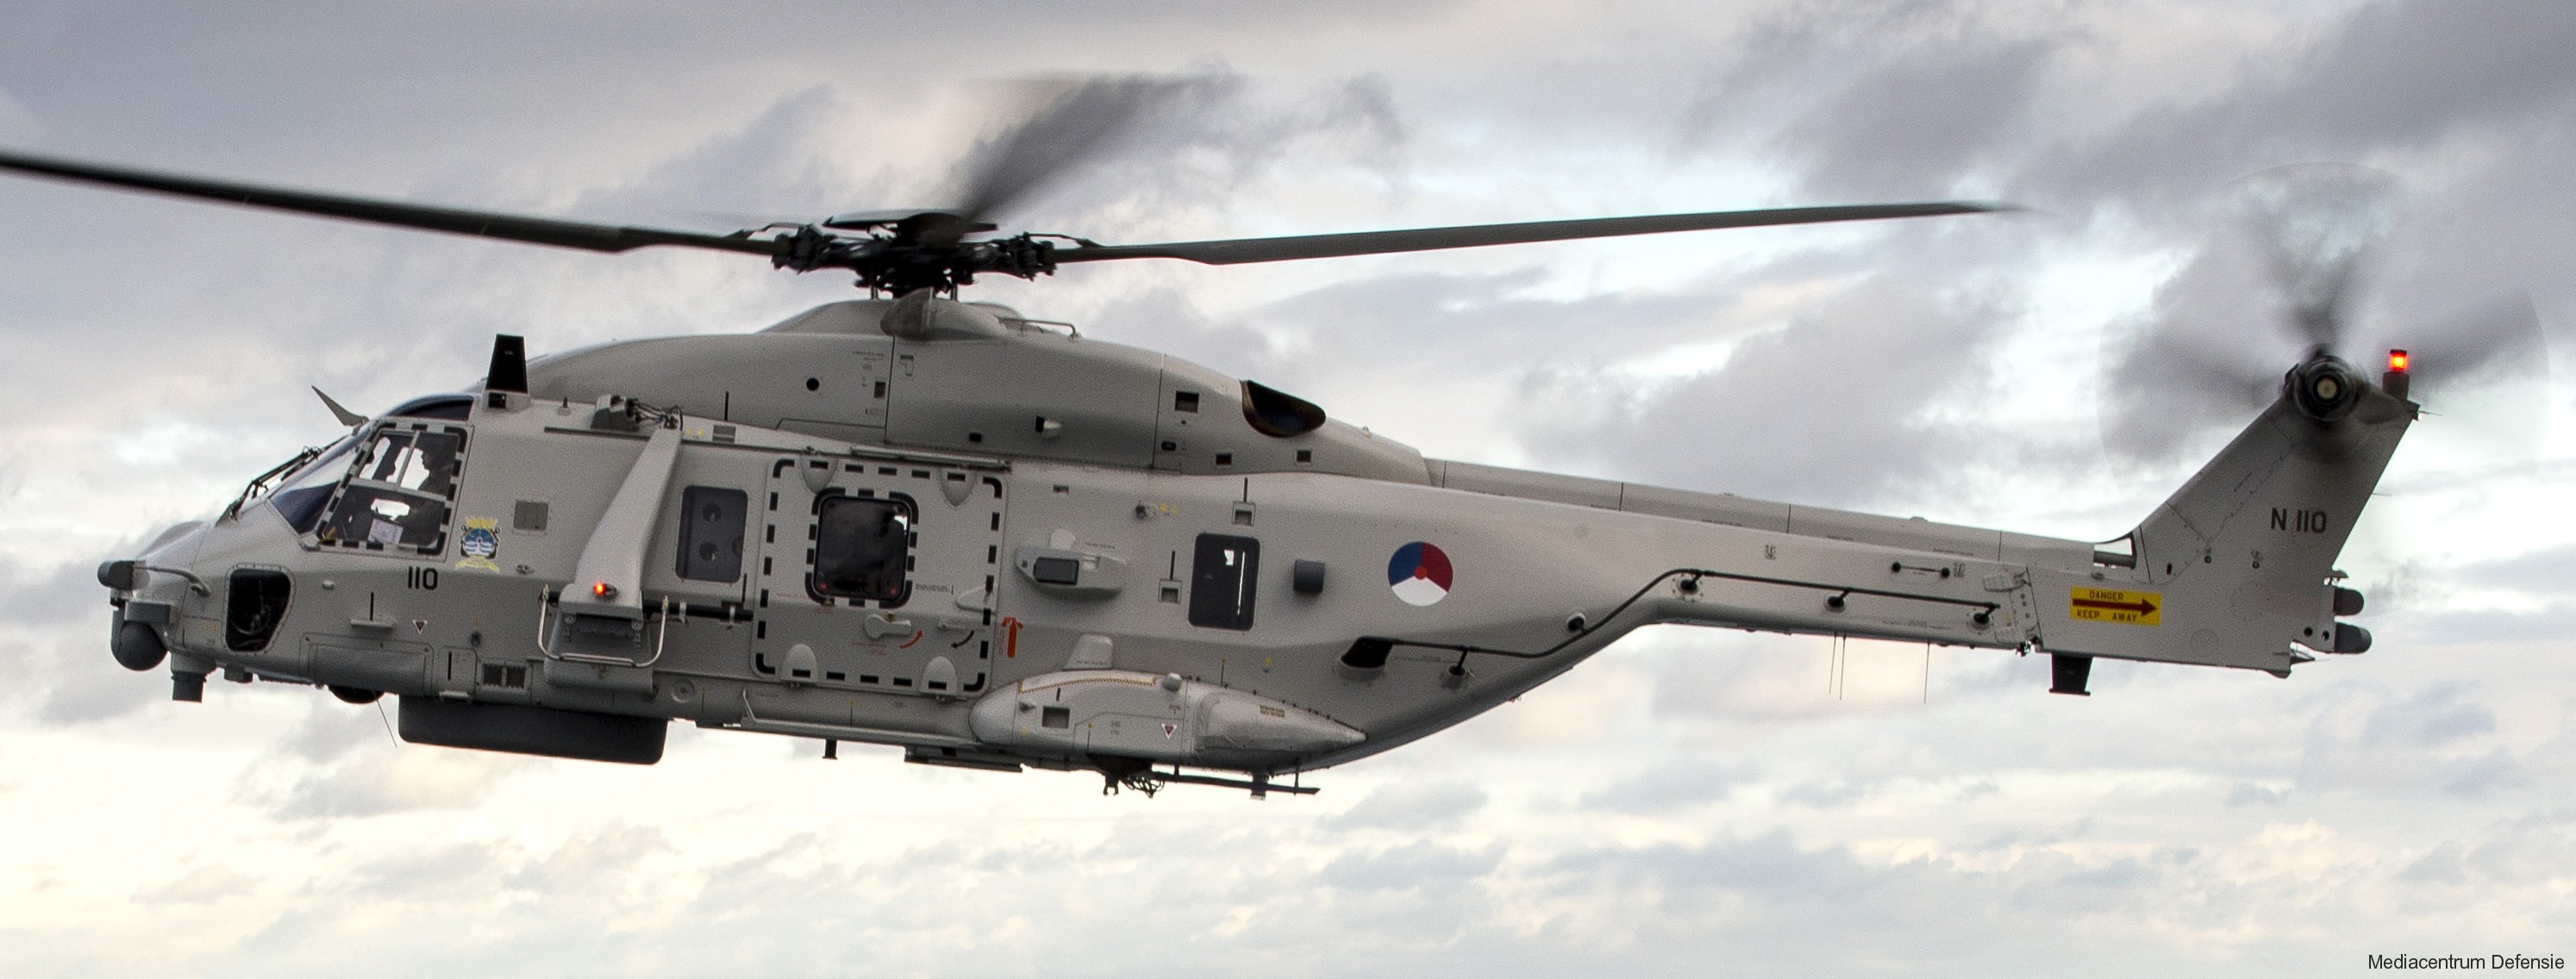 nh90 nfh helicopter royal netherlands navy koninklijke marine n-110 10